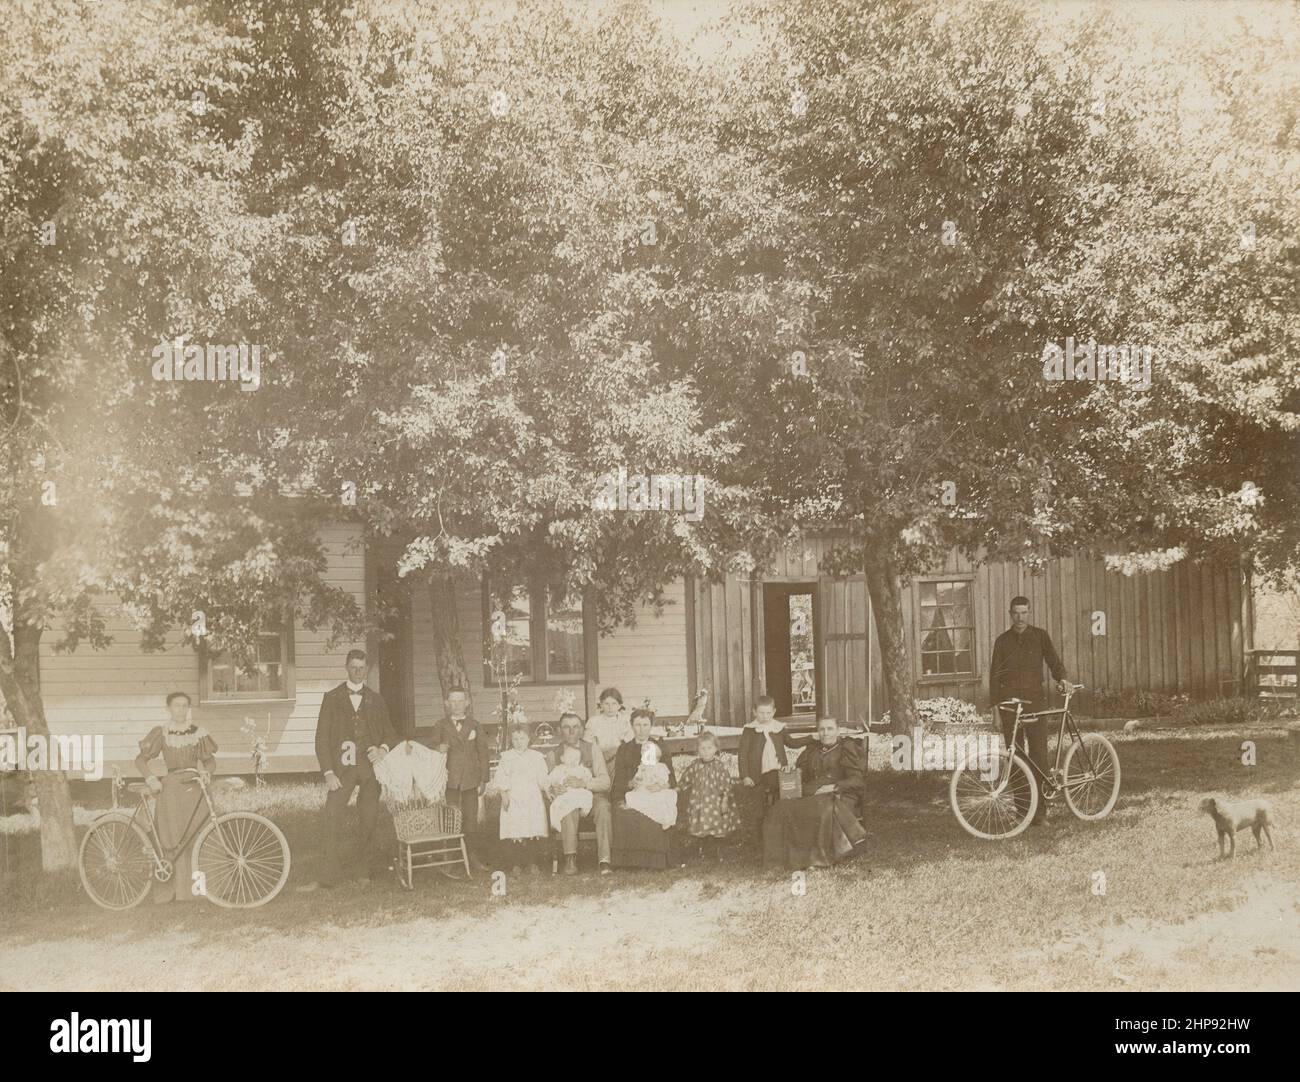 Antikes Foto aus dem Jahr 1880, ausgedehnte Familiengruppe draußen mit einigen Besitztümern, darunter zwei Fahrräder, ein ausgestopfter Falke und ein silberner Hochzeitskorb. Genaue Lage unbekannt, wahrscheinlich Neuengland, USA. QUELLE: ORIGINALFOTO Stockfoto